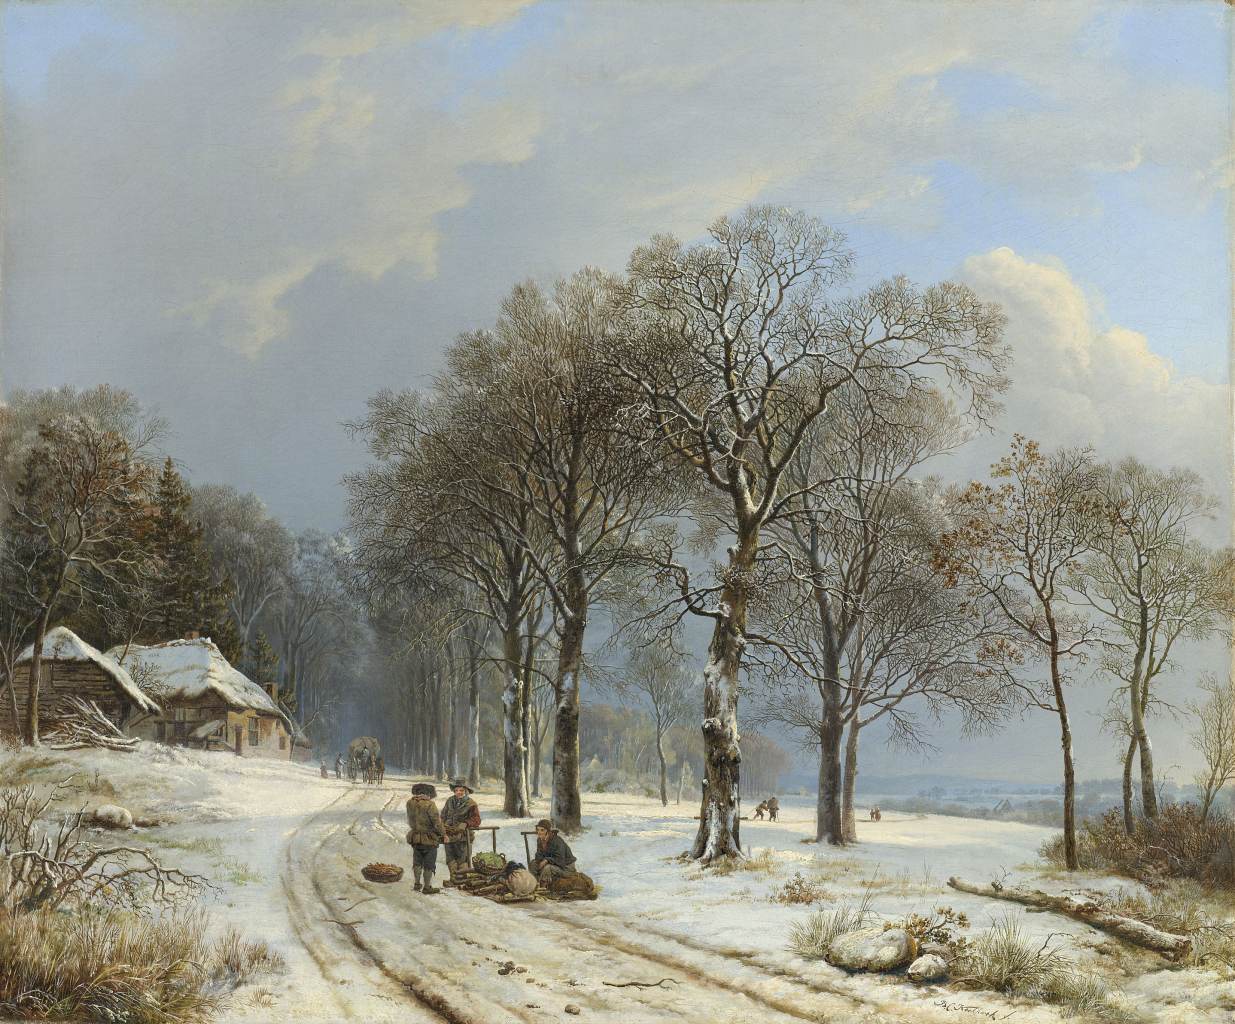 Barend Cornelis Koekkoek, Winter landscape, ca. 1838